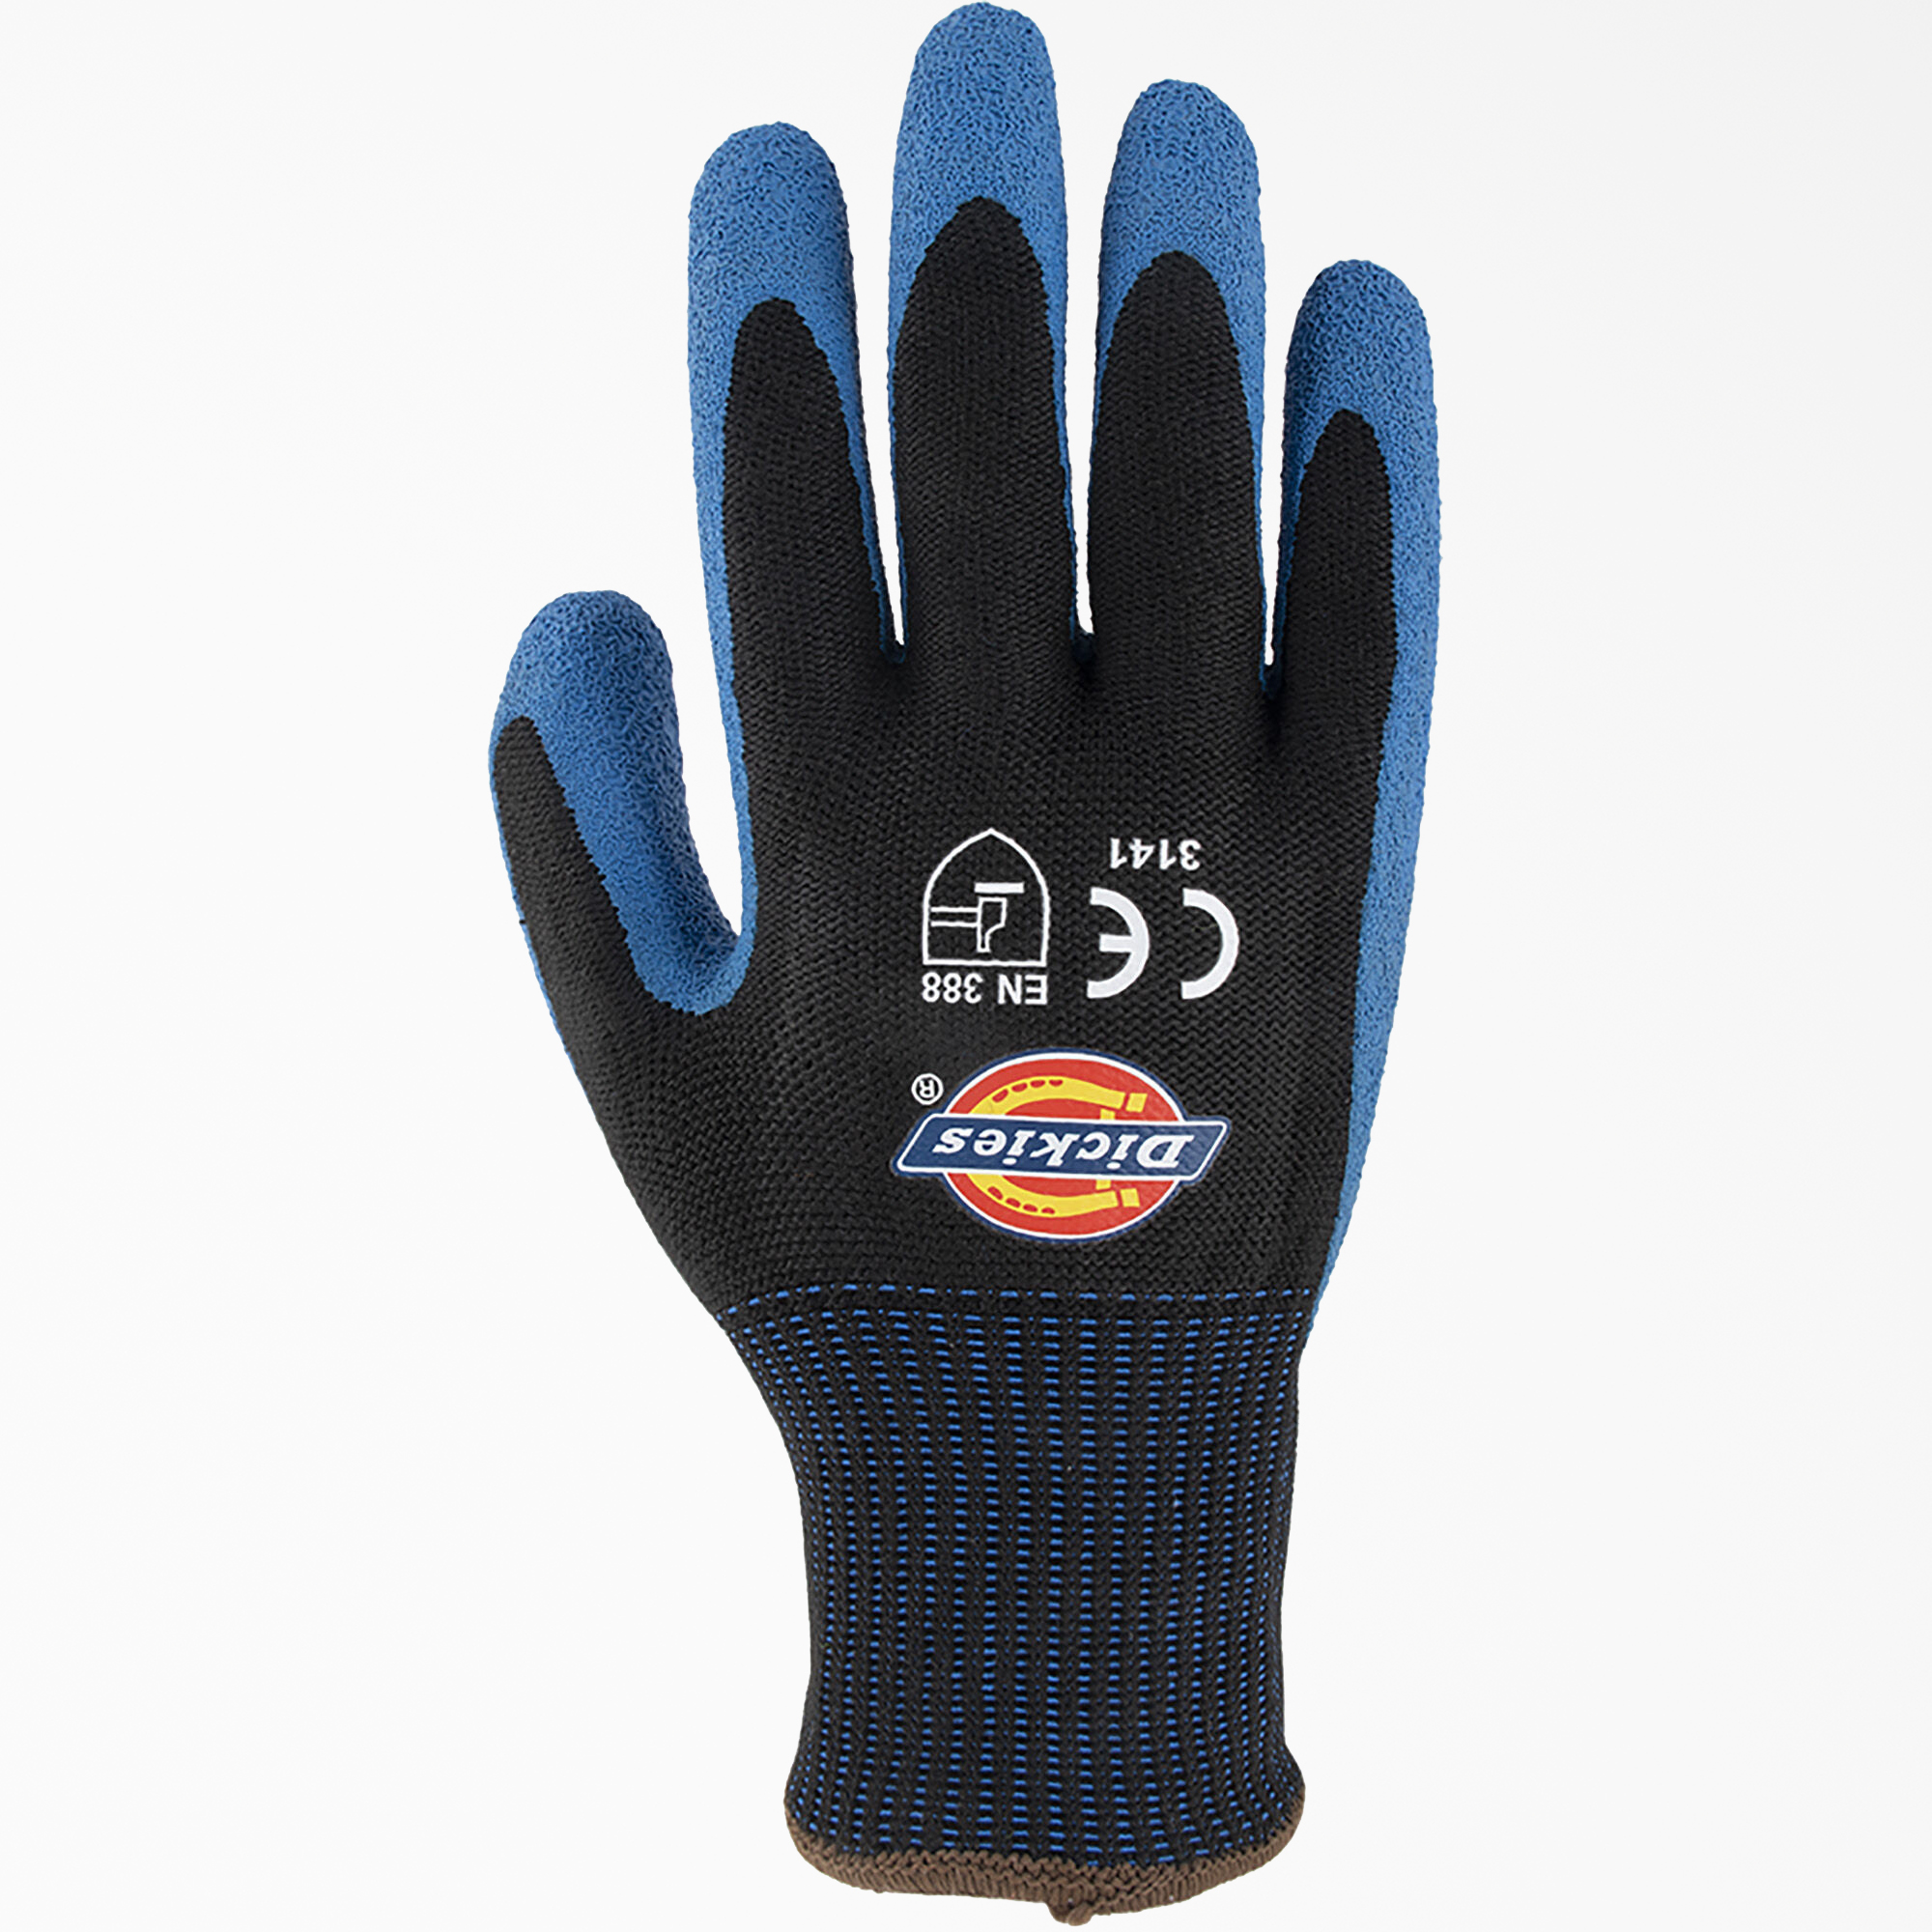 Latex Coated Work Gloves - Black (BK)